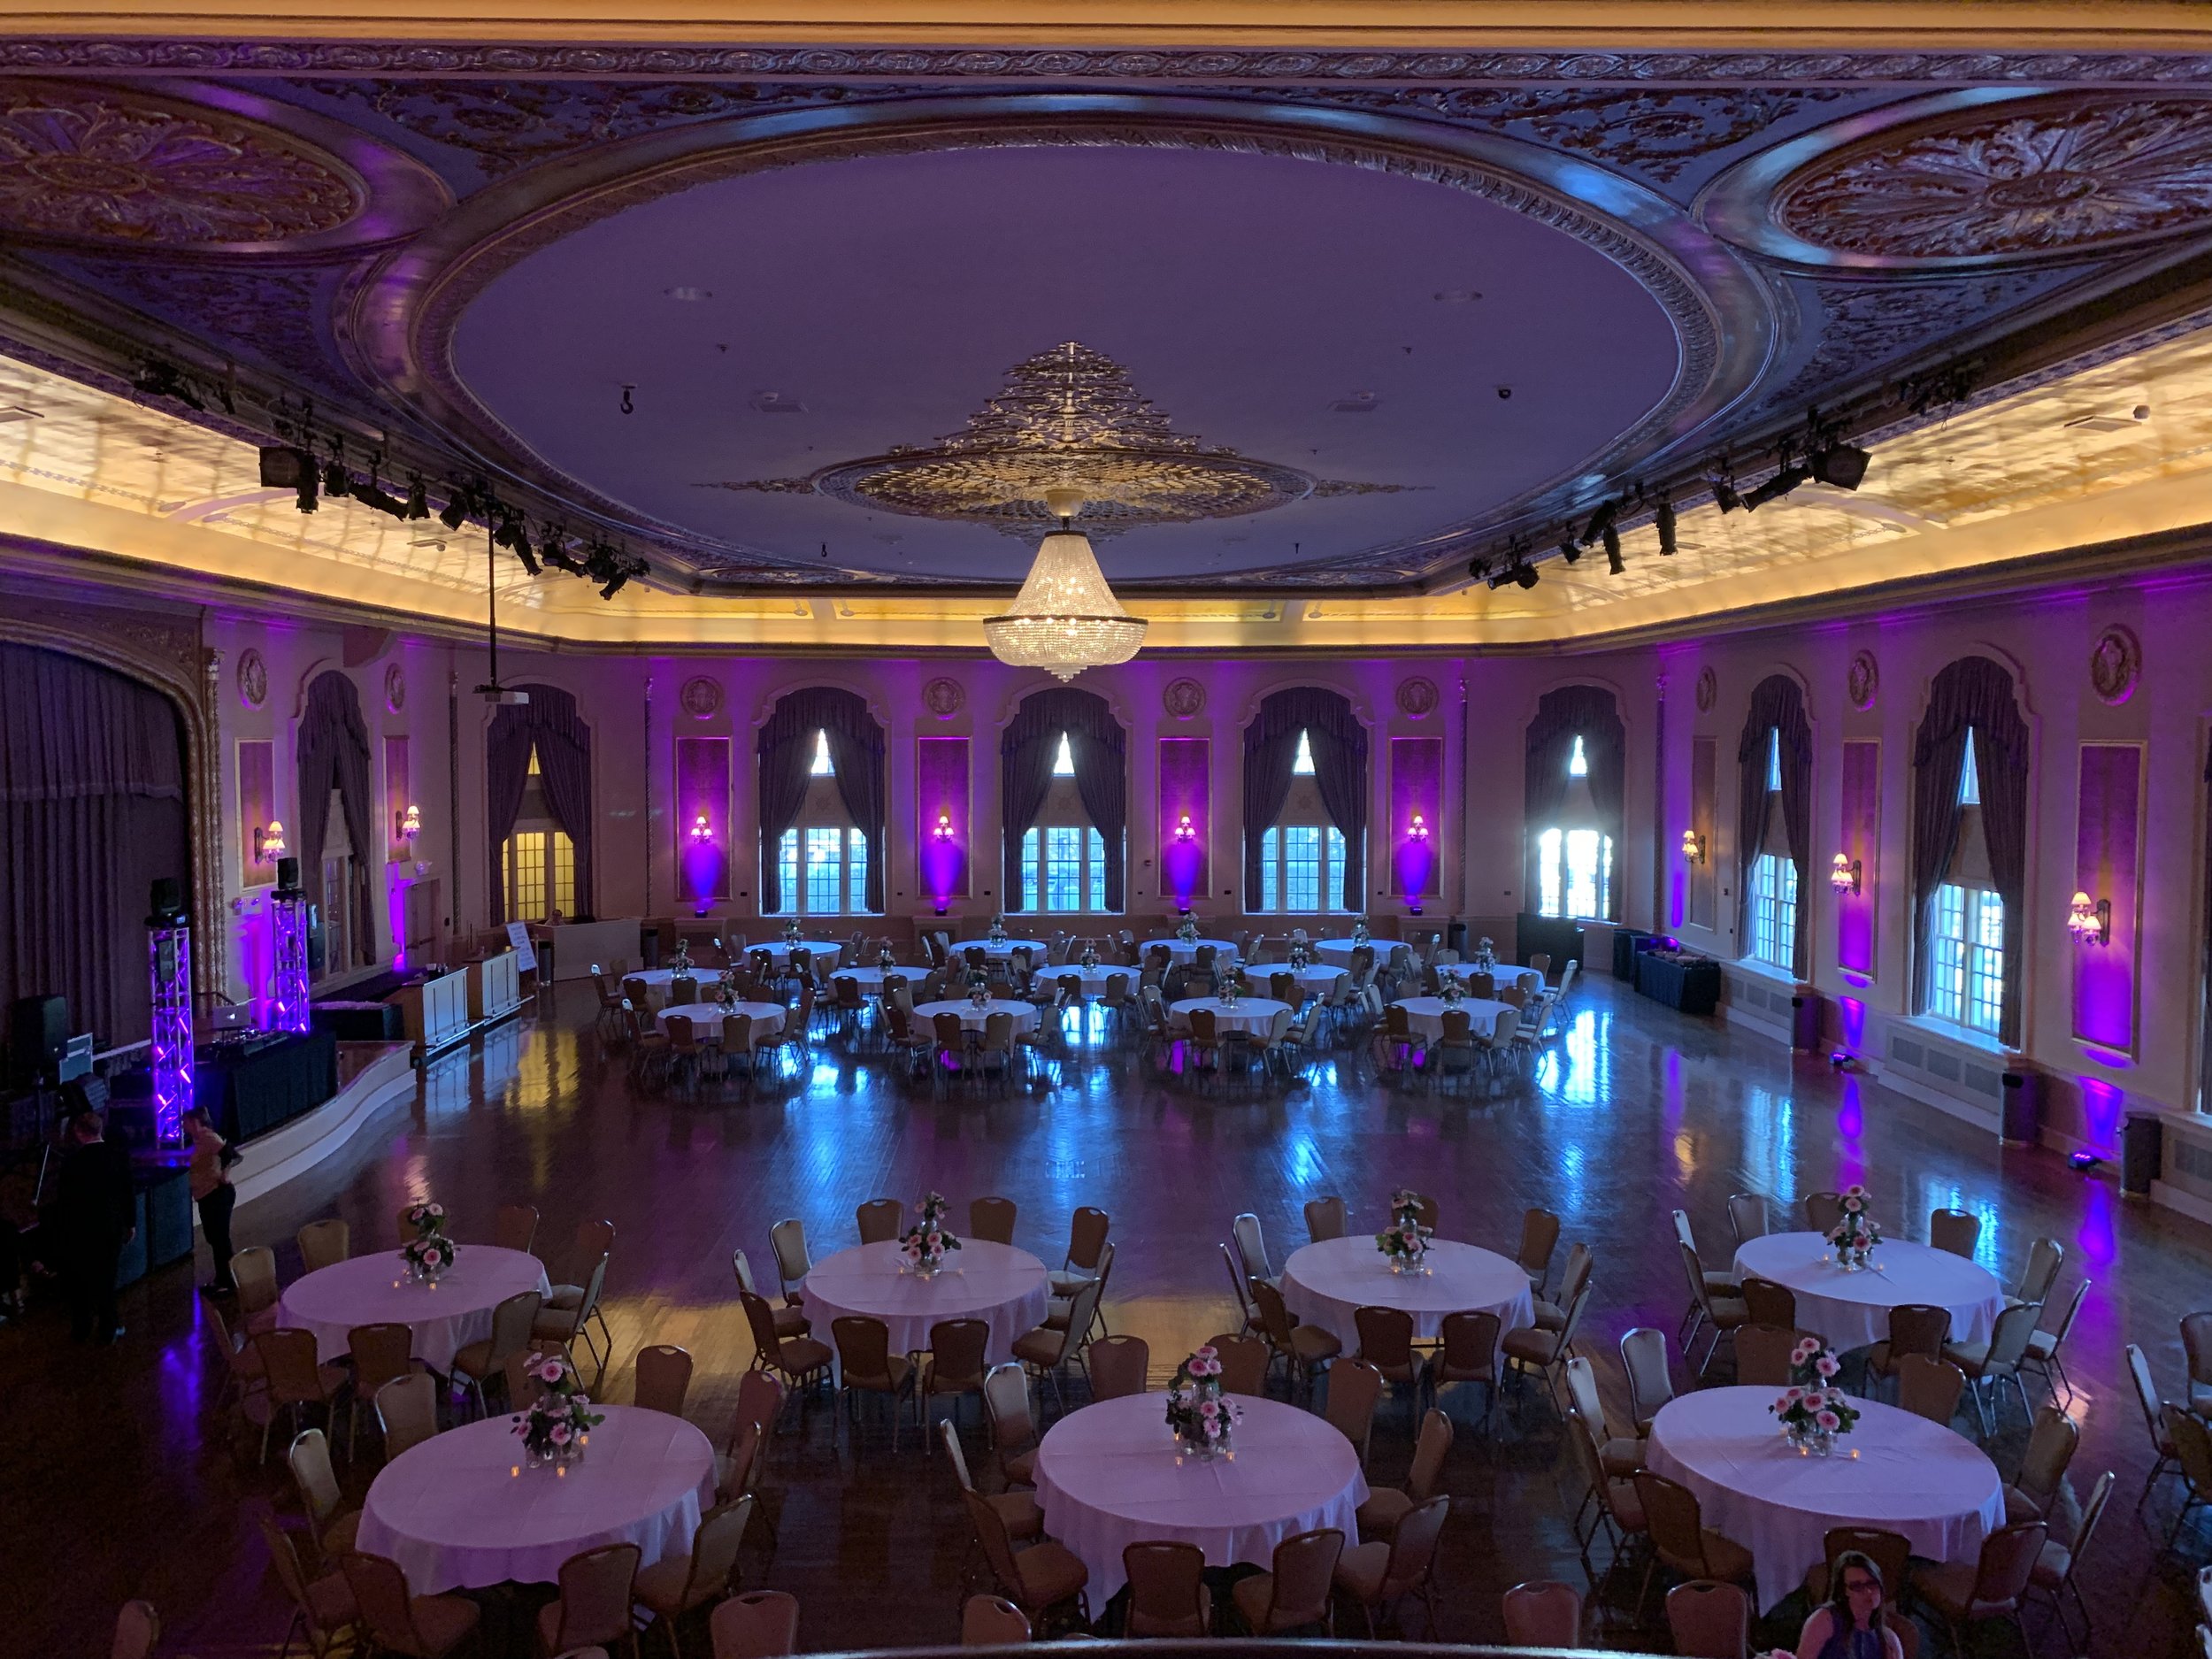 Palais Royale Ballroom with purple uplighting